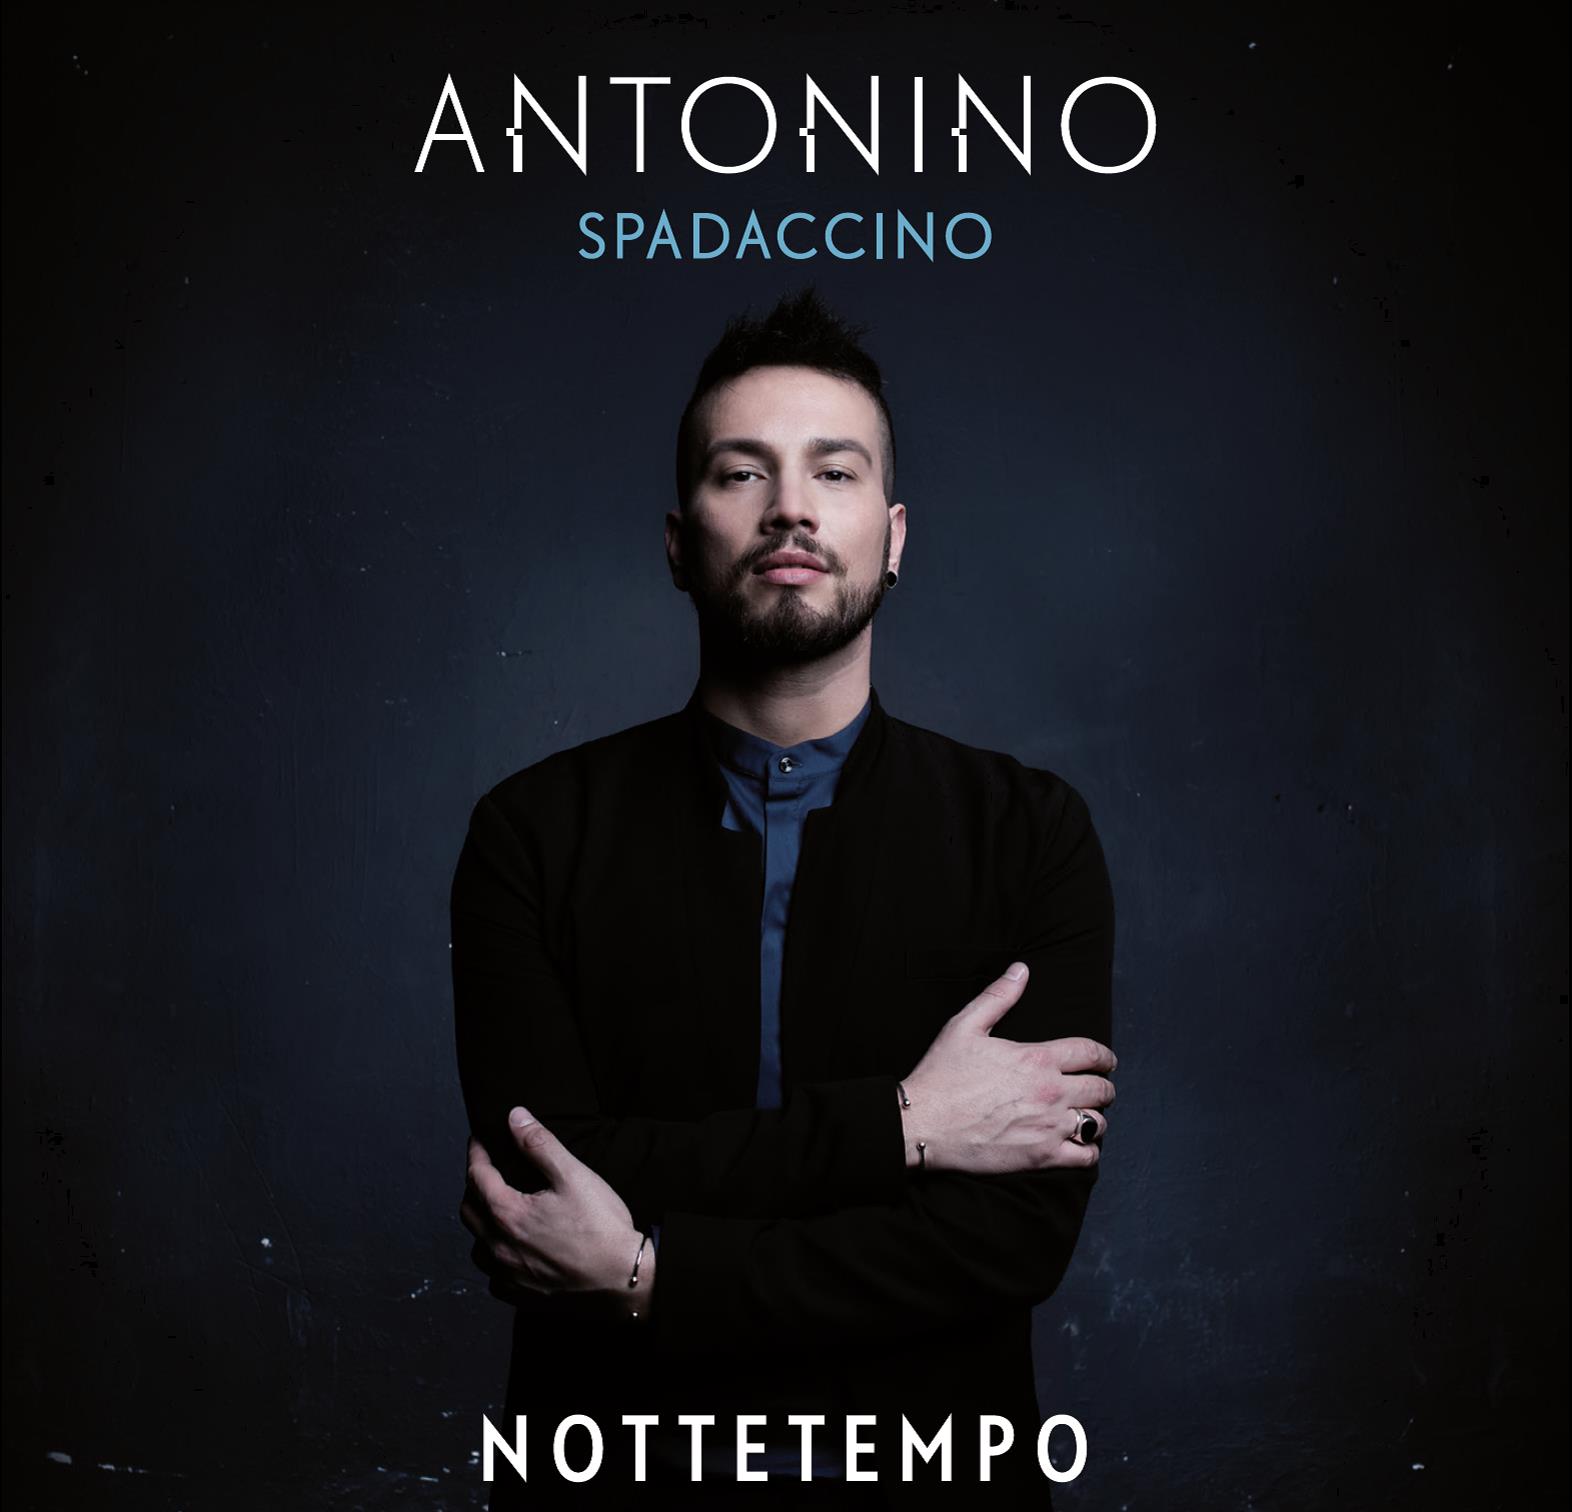 Antonino Spadaccino: il 22 aprile esce “Nottetempo”!